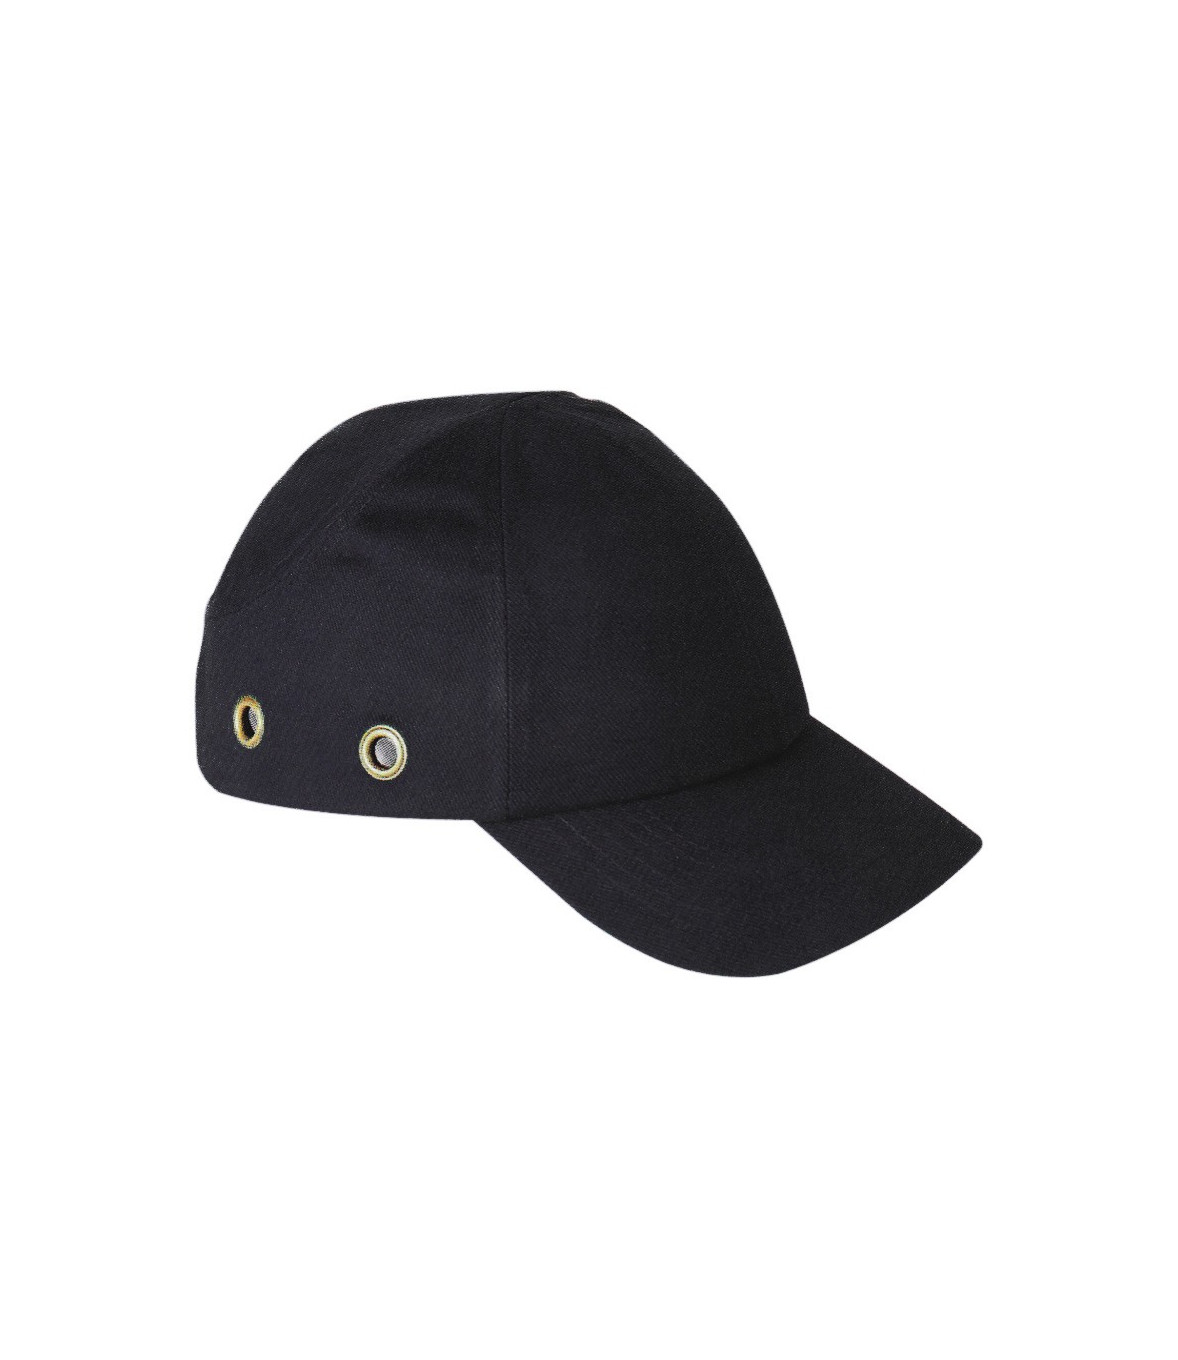 Casquette noire avec patch réfléchissant casquette de sécurité unisexe –  Pielini DUE